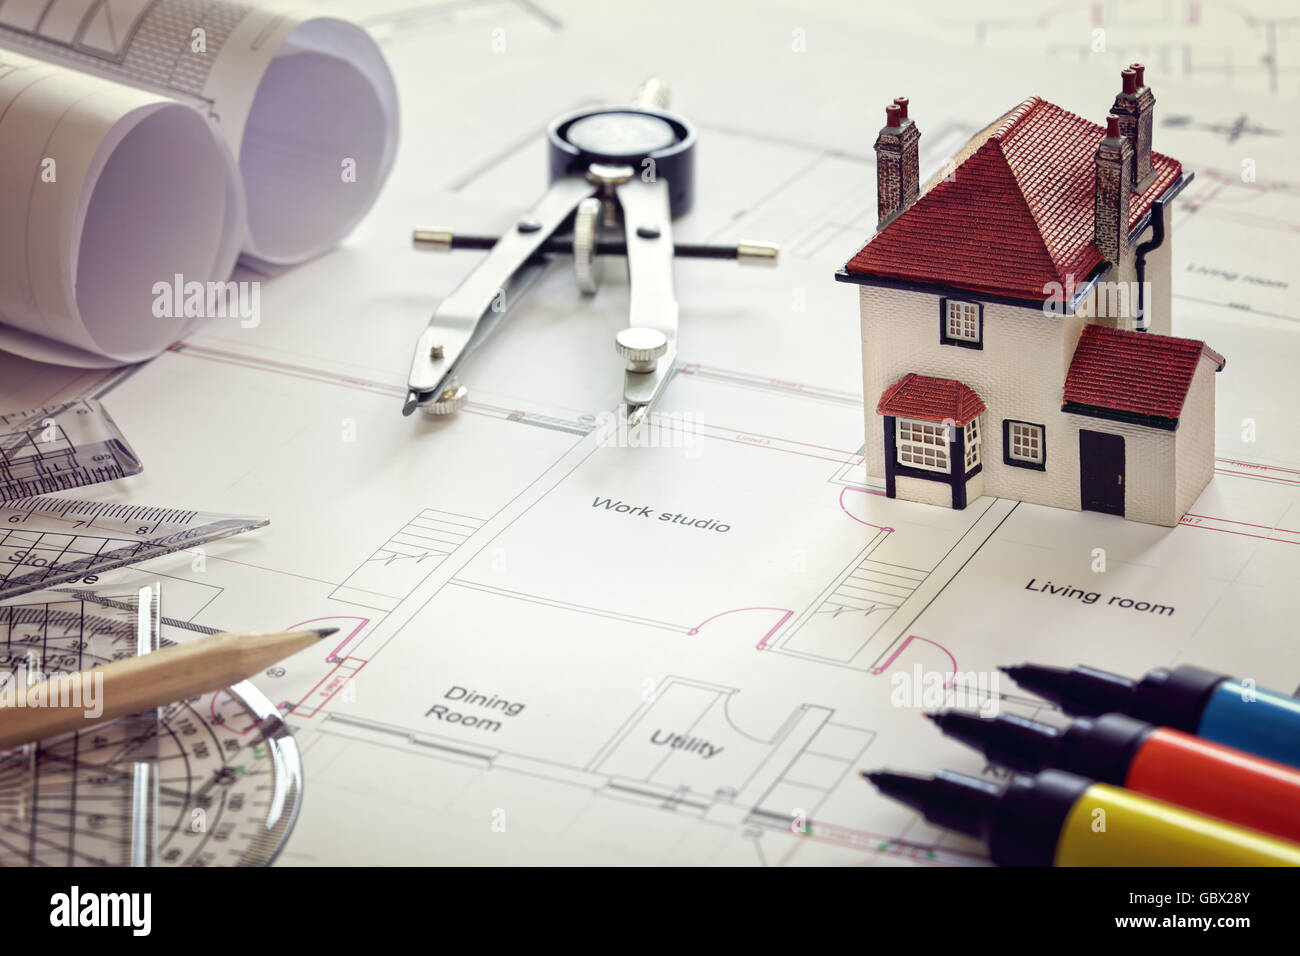 Plan de maison et plan de maison modèle concept pour la conception de maisons nouvelles ou l'amélioration d'accueil Banque D'Images